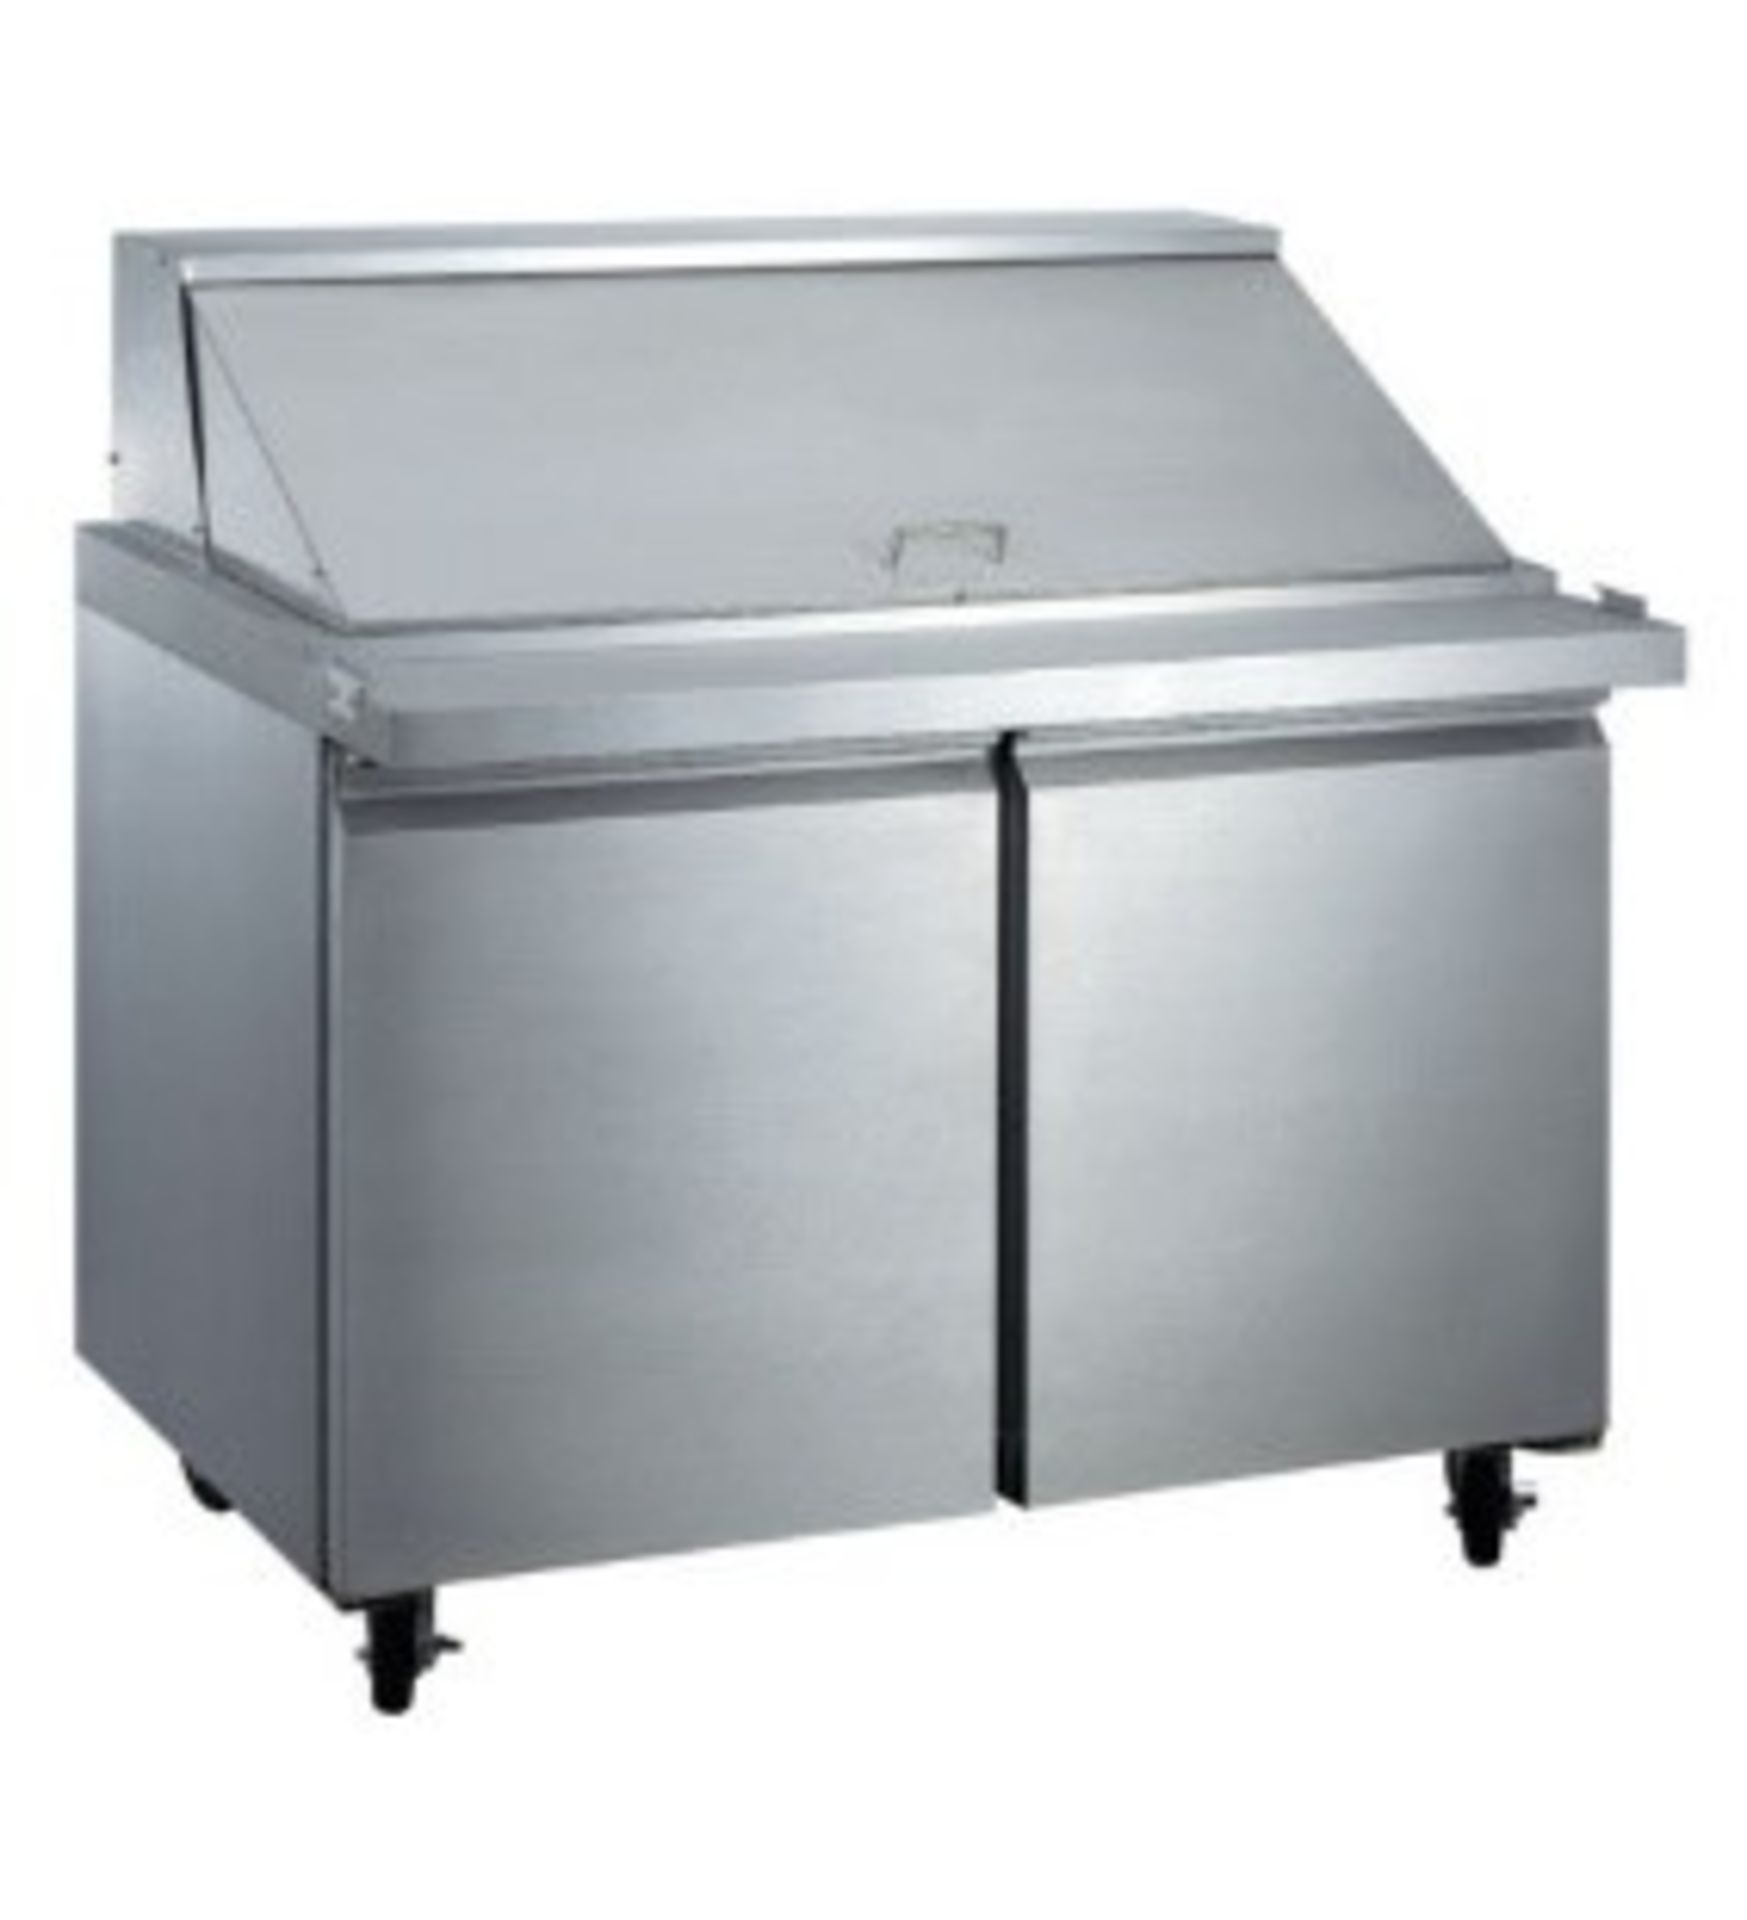 EQ  Steel Food Prep Table Refrigerator 71 Gal, Silver Model #:SCLM2 E HC L*W*H (inch):46.75*34*45.87